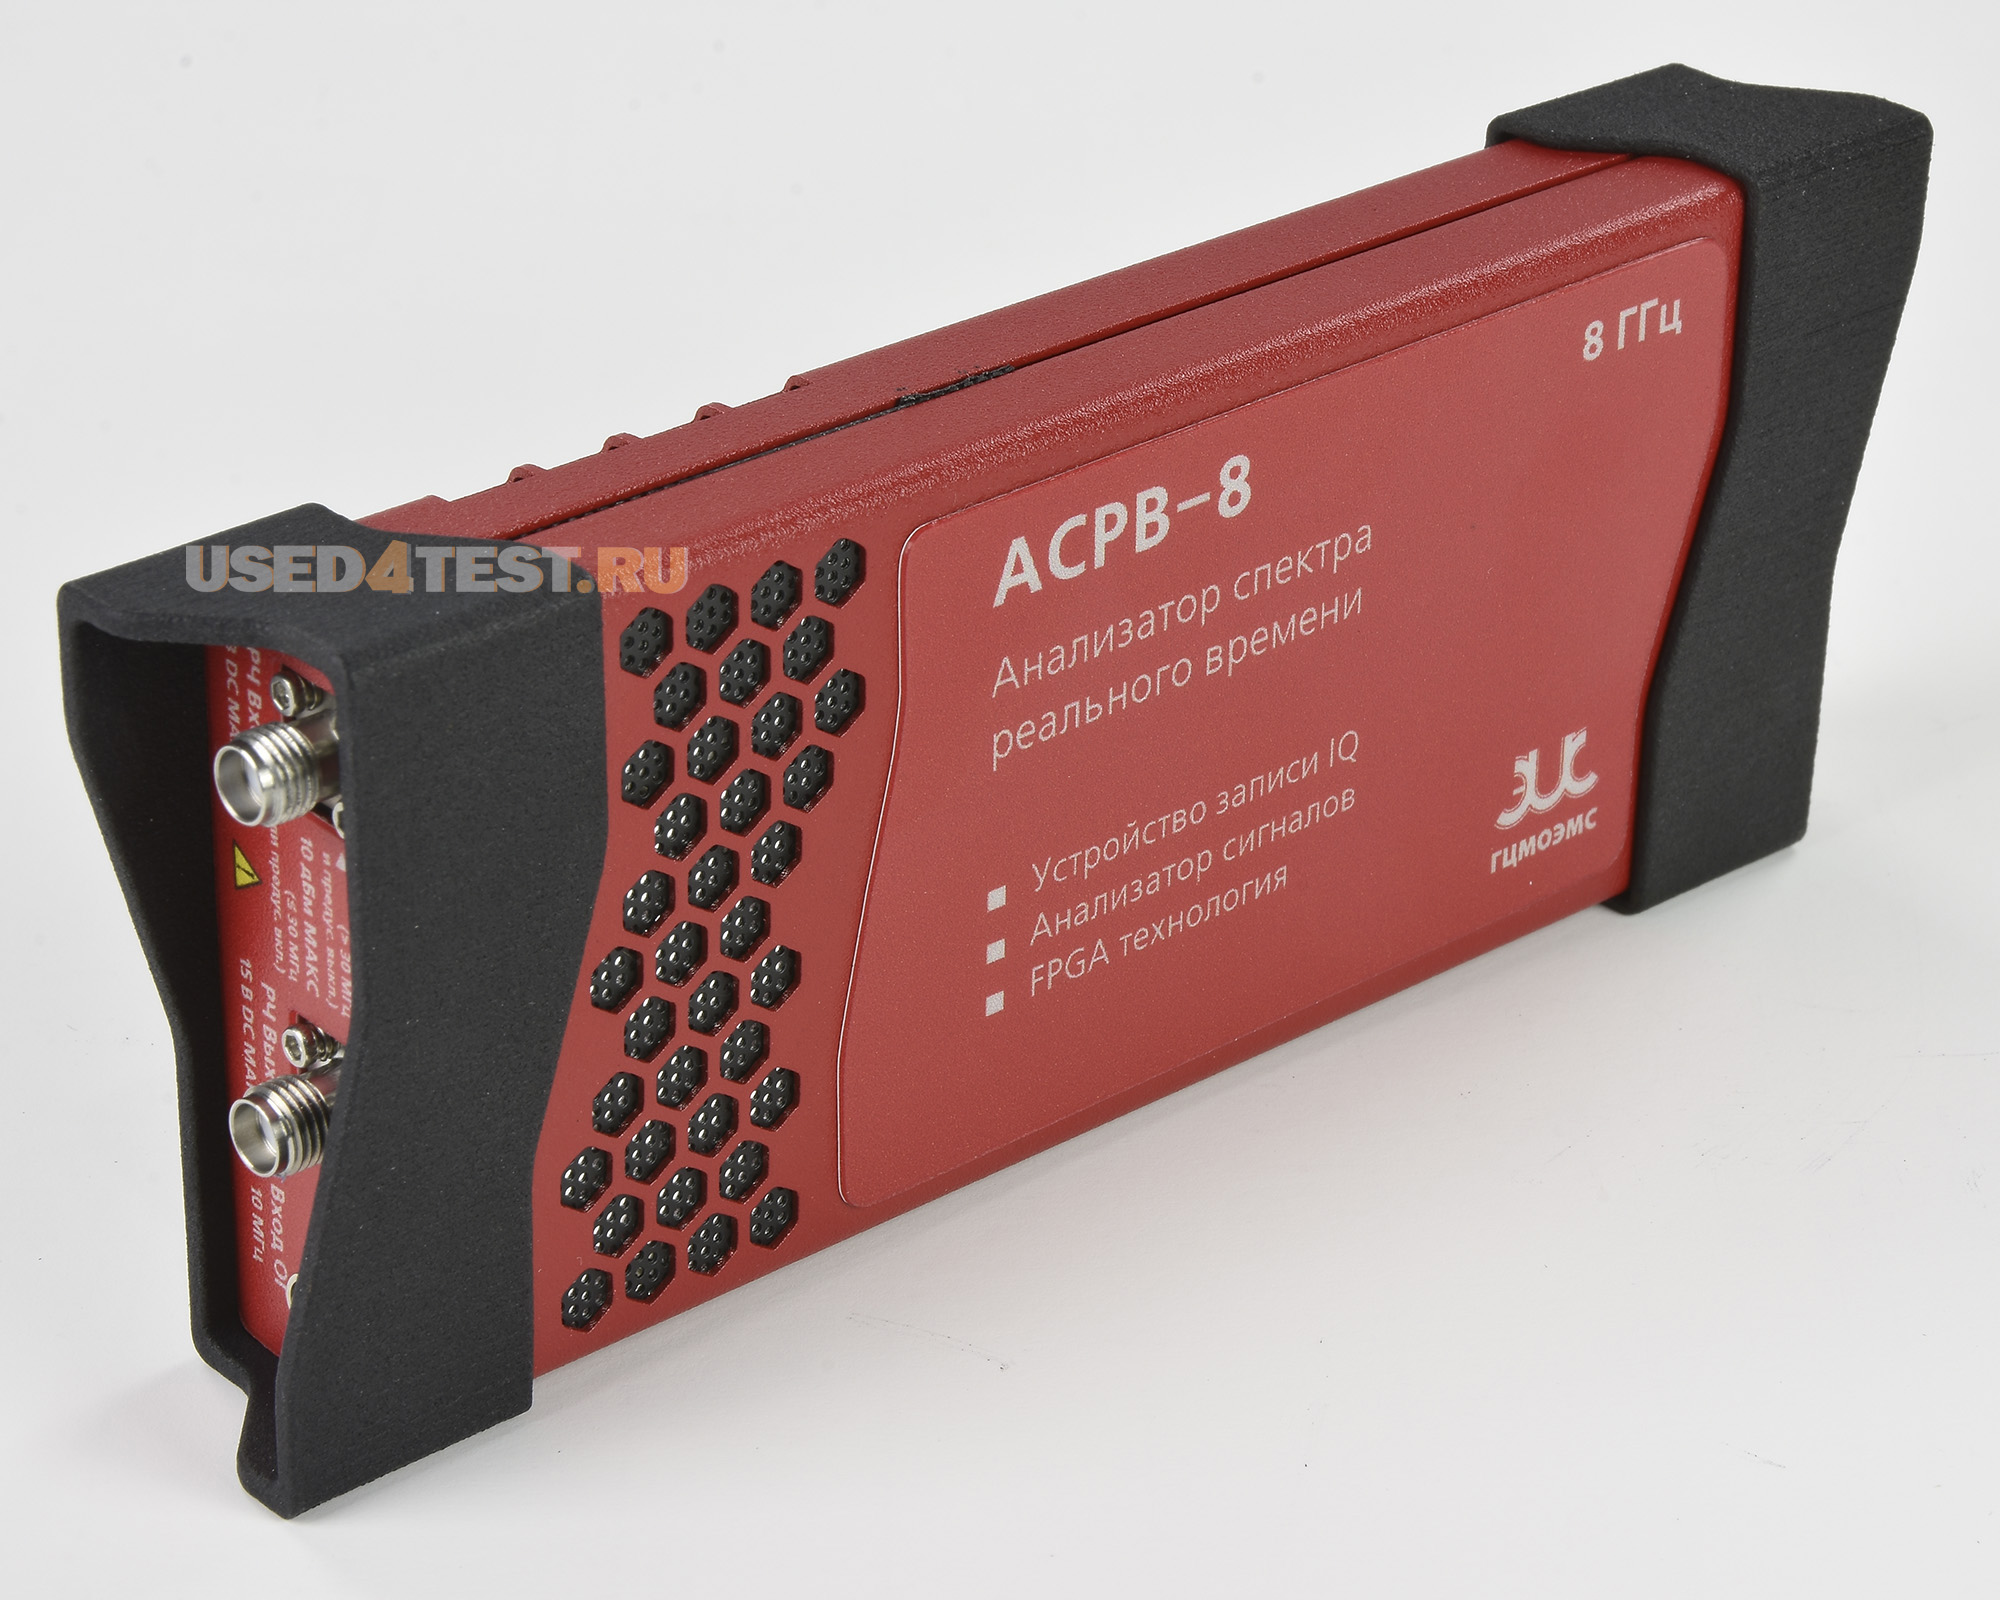 Анализатор спектра реального времени
ГЦМО ЭМС АСРВ-8
с диапазоном от 9 кГц до 8,5 ГГц

 В комплекте с опцией: 


	ТГ — Встроенный генератор сигналов (100 кГц – 6,3 ГГц)
